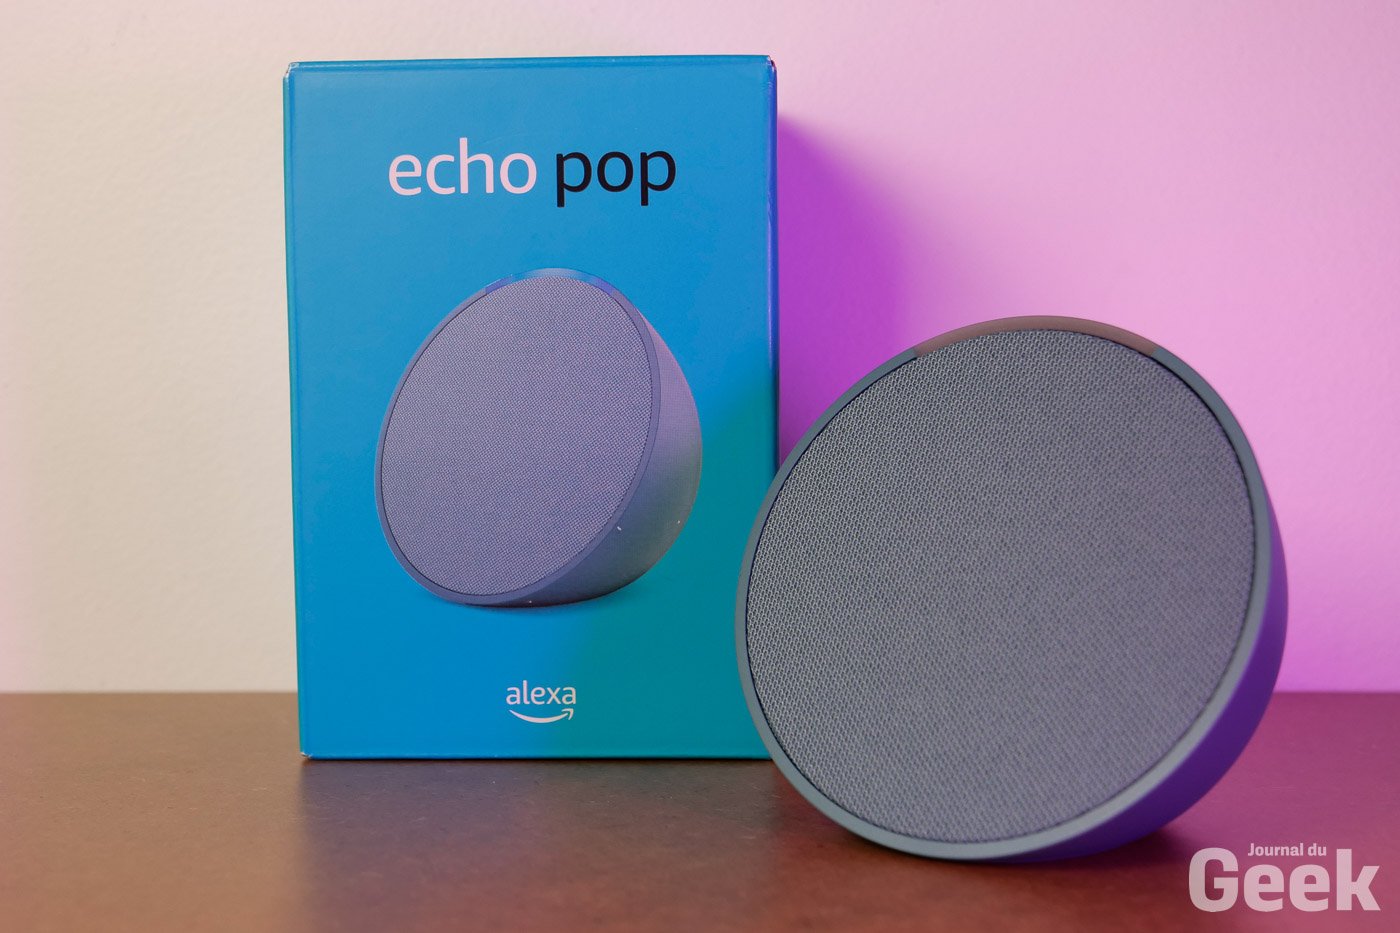 Echo Pop | Enceinte connectée Bluetooth et Wi-Fi compacte au son riche,  avec Alexa | Lavande